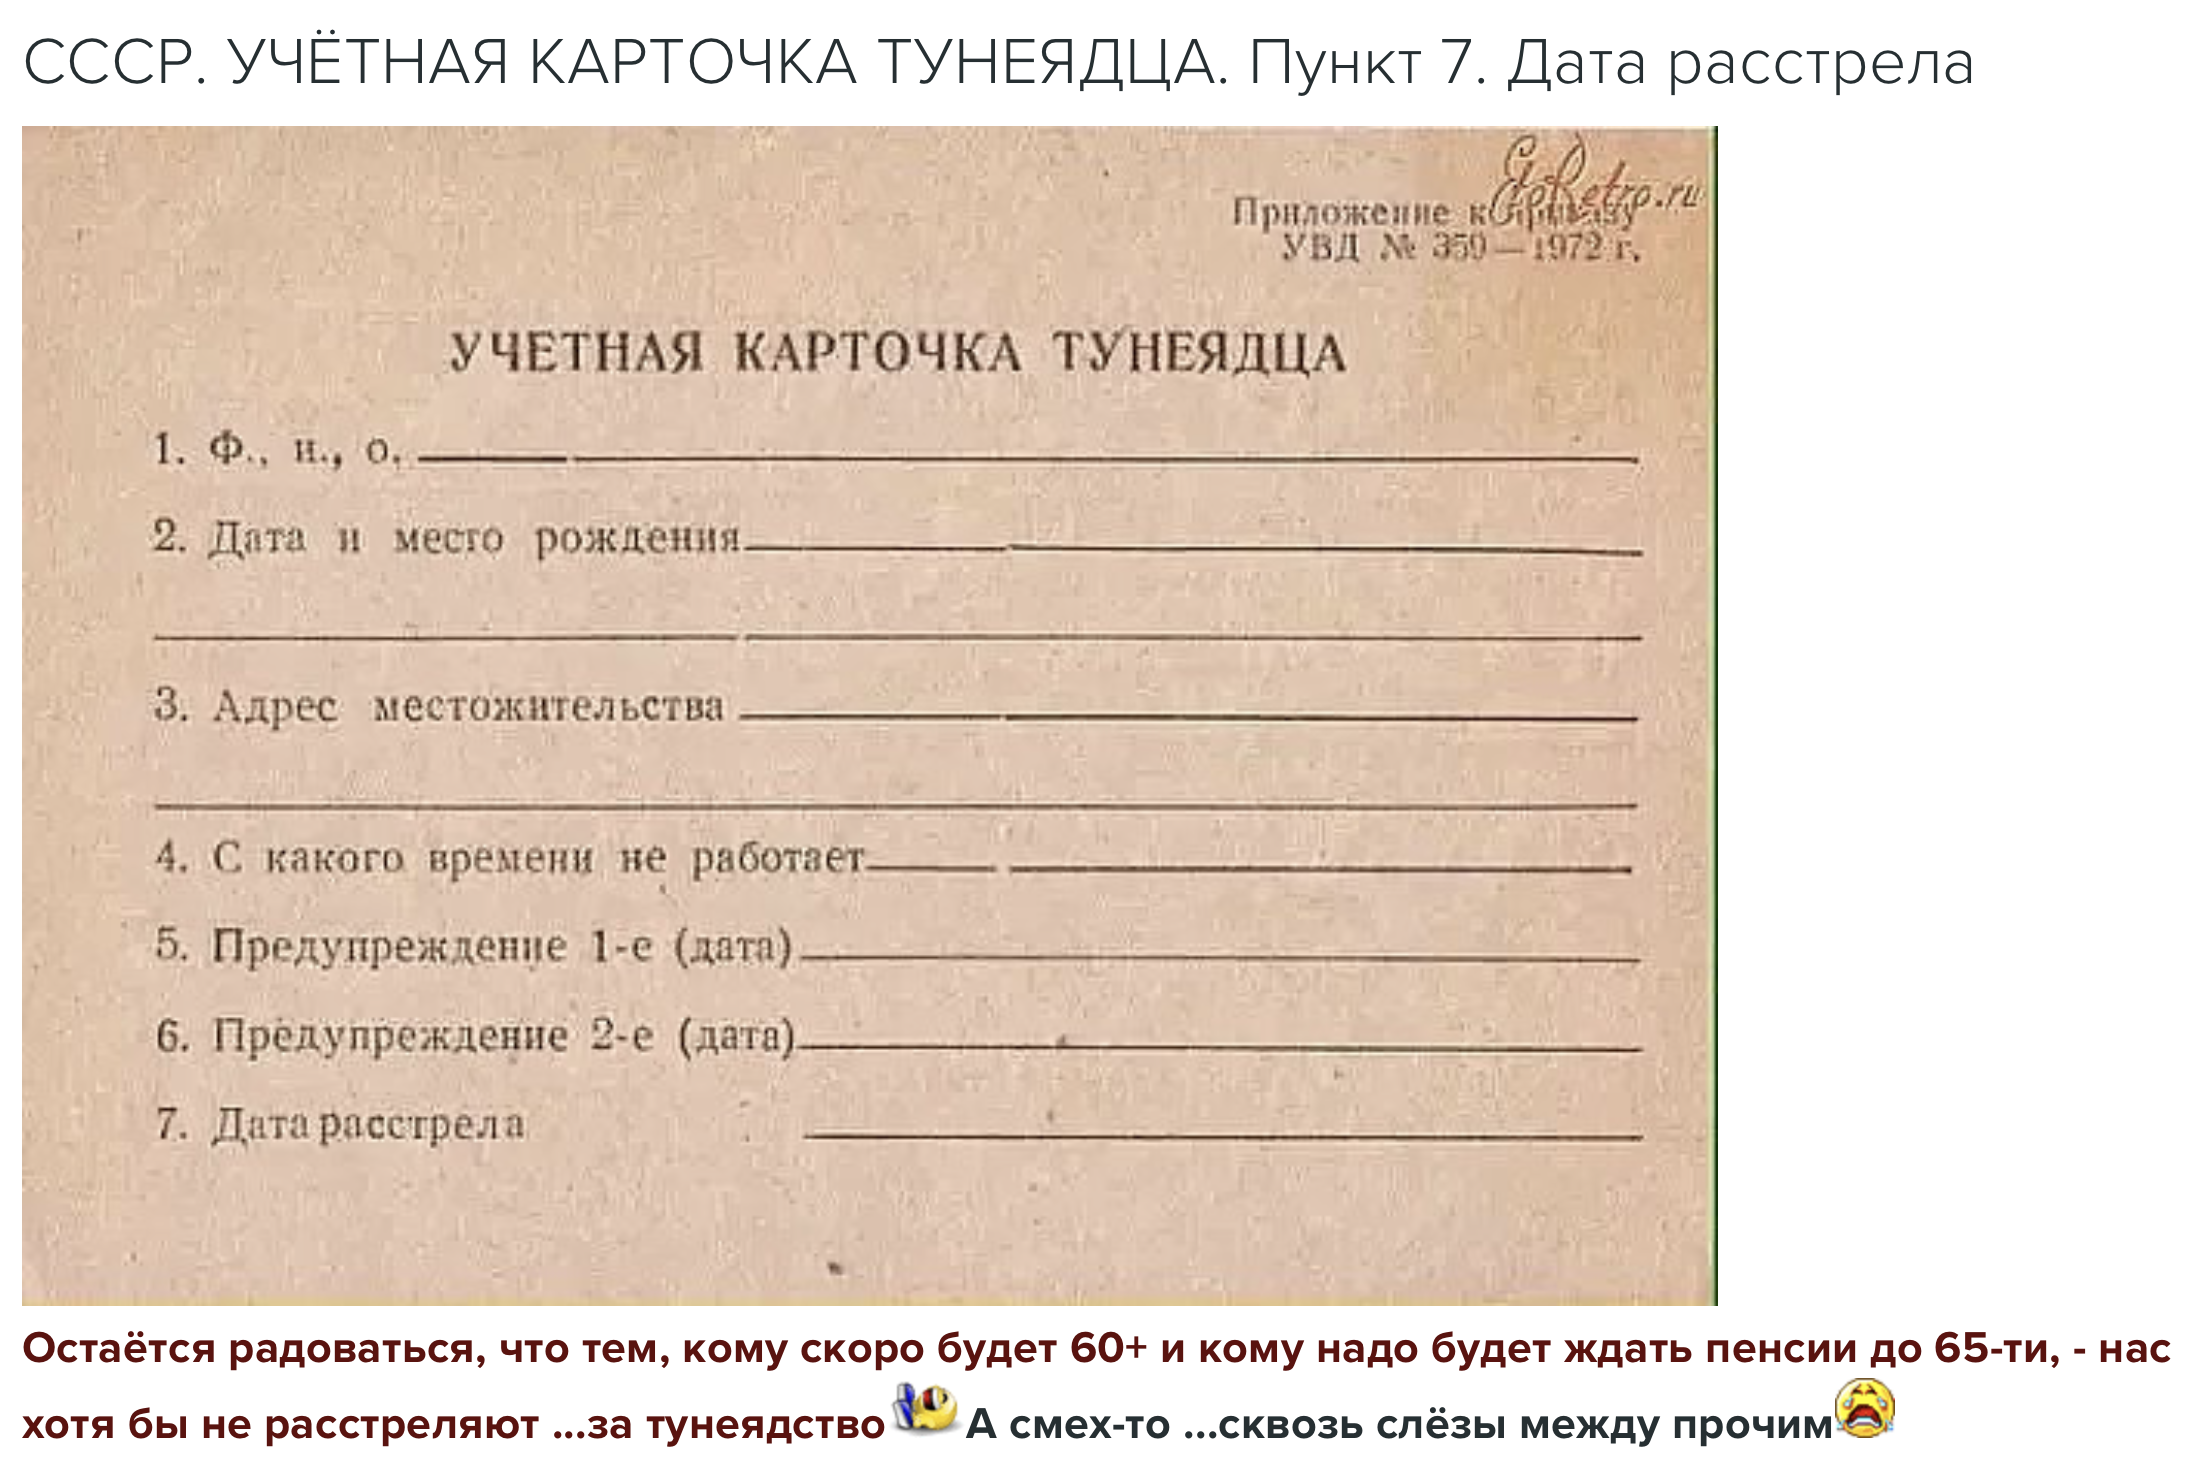 в СССР при Сталине расстреливали за тунеядство учетная карточка